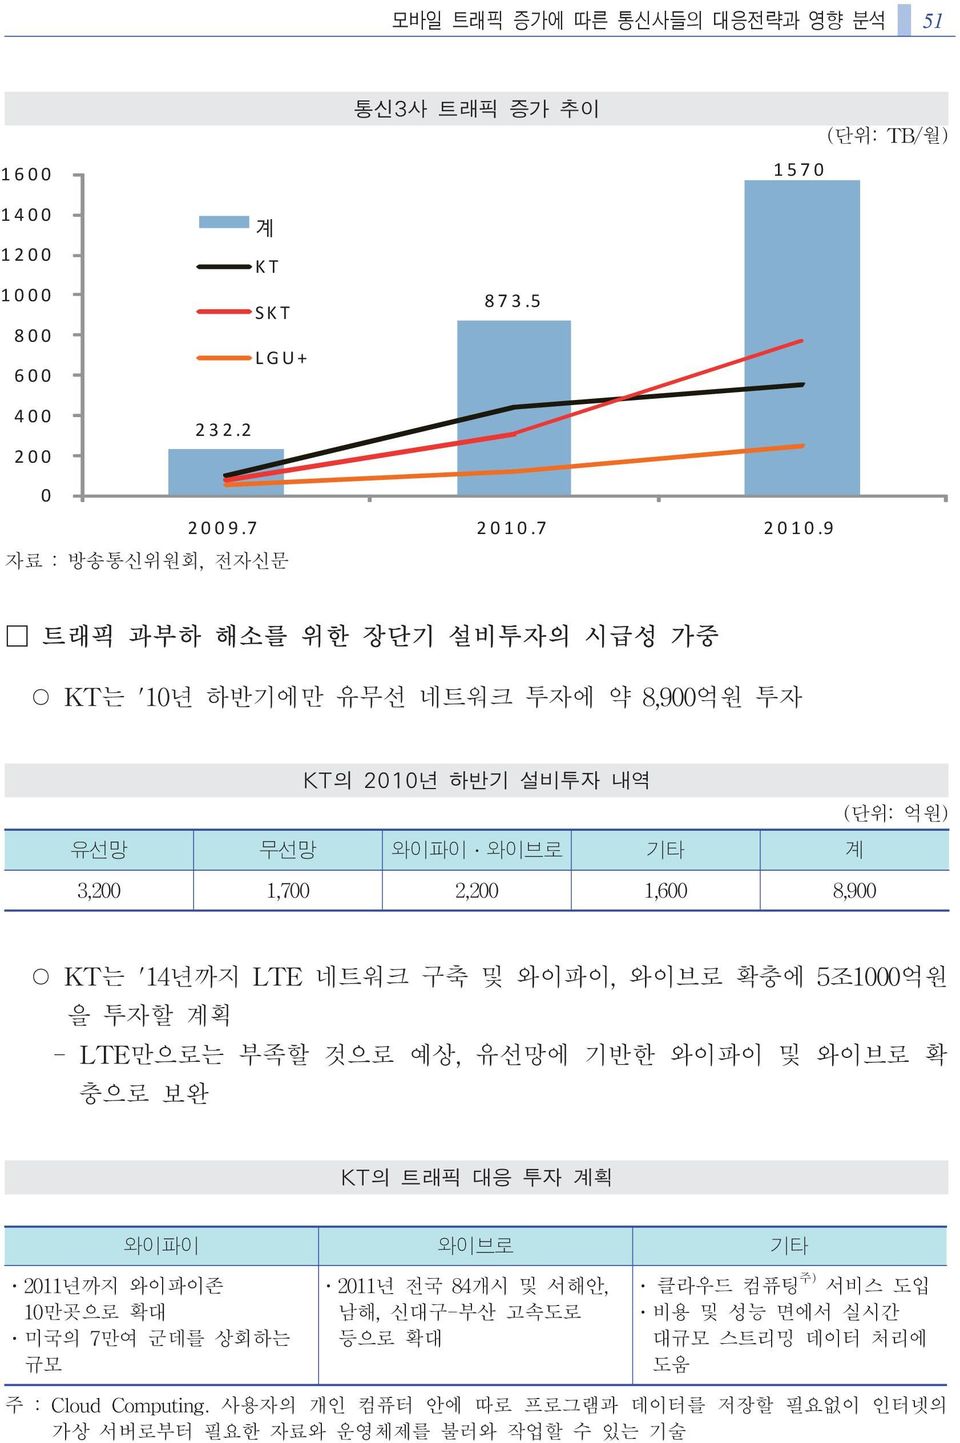 9 트래픽 과부하 해소를 위한 장단기 설비투자의 시급성 가중 KT는 '10년 하반기에만 유무선 네트워크 투자에 약 8,900억원 투자 KT의 2010년 하반기 설비투자 내역 (단위: 억원) 유선망 무선망 와이파이 와이브로 기타 계 3,200 1,700 2,200 1,600 8,900 KT는 '14년까지 LTE 네트워크